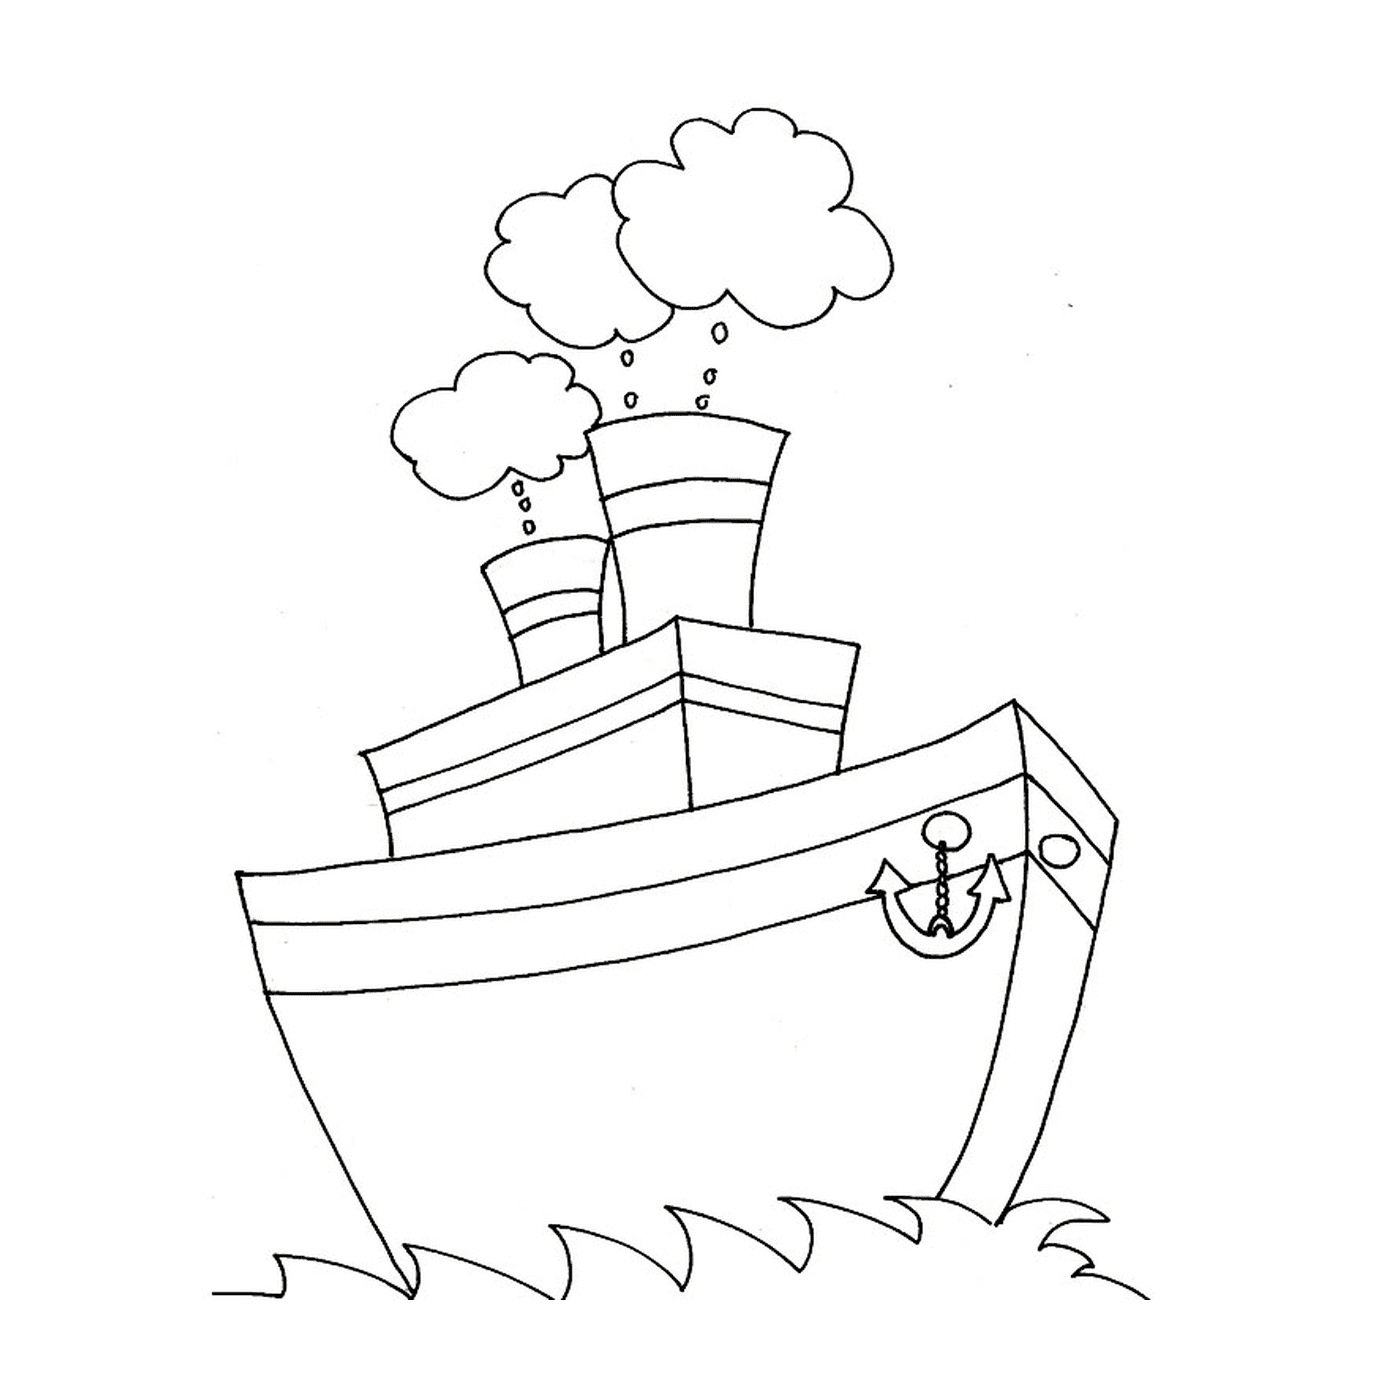   Un bateau à moteur avec deux hélices sur le côté 